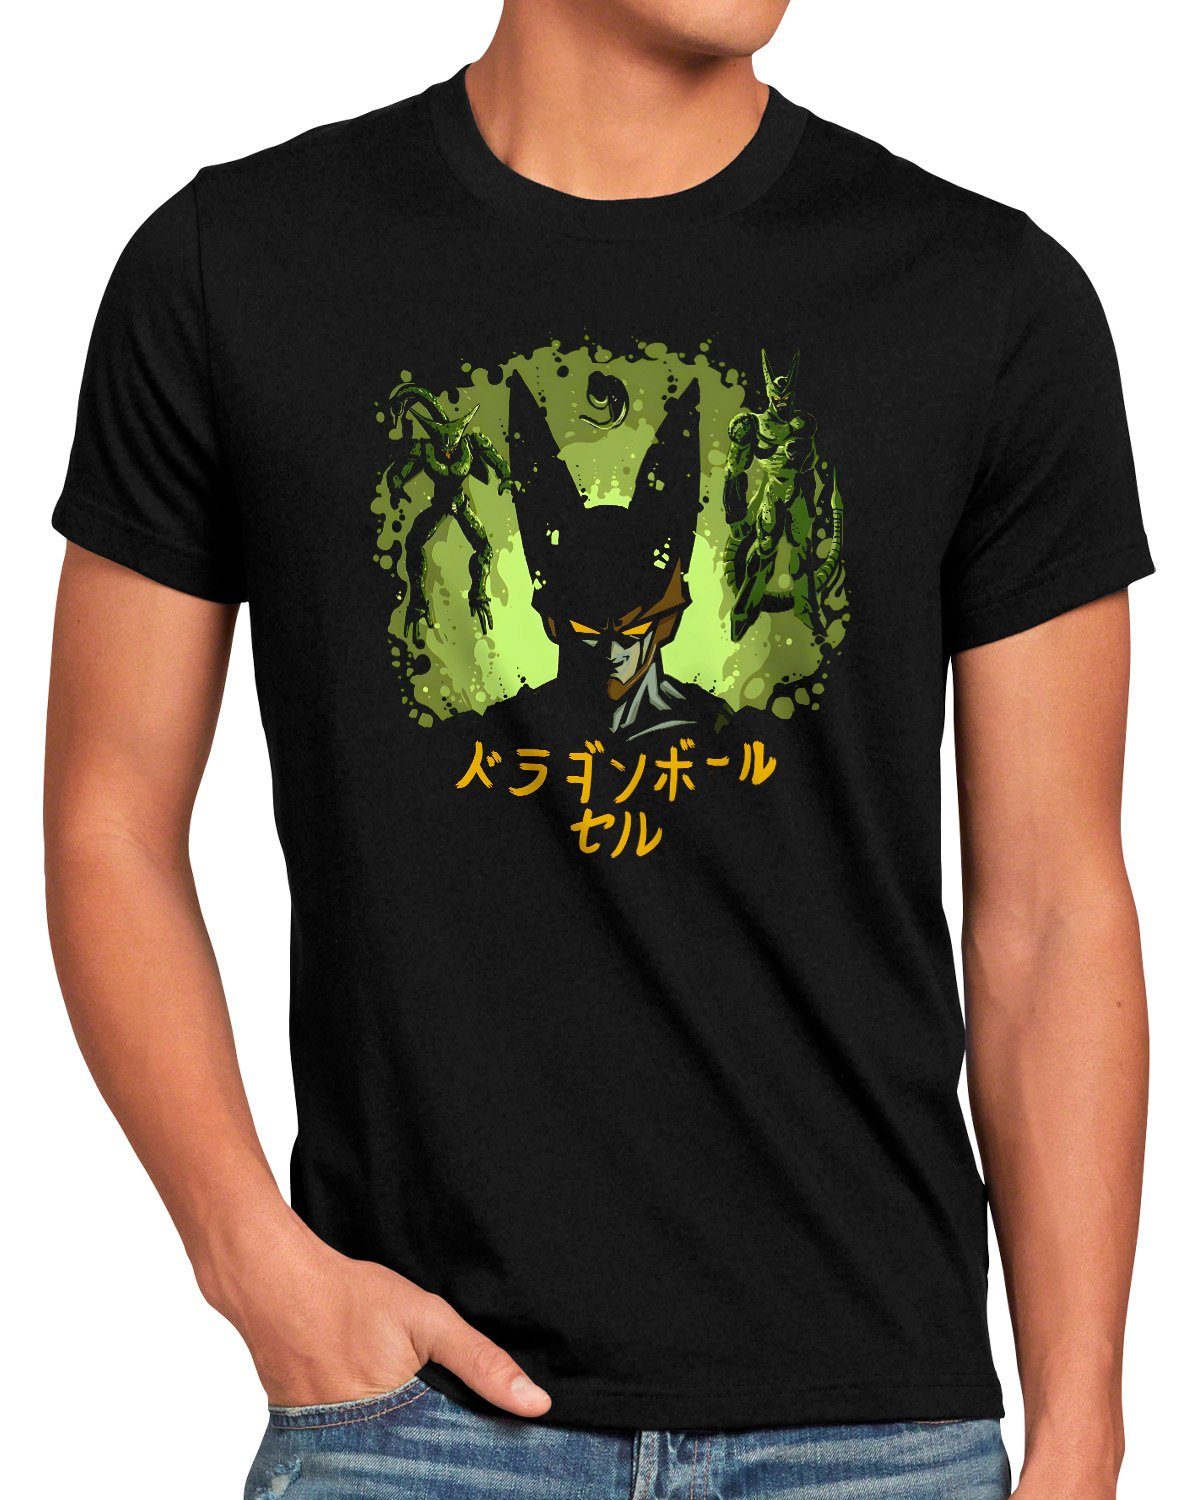 breakers T-Shirt super Heritage z dragonball Herren songoku Print-Shirt the gt style3 kakarot Cell